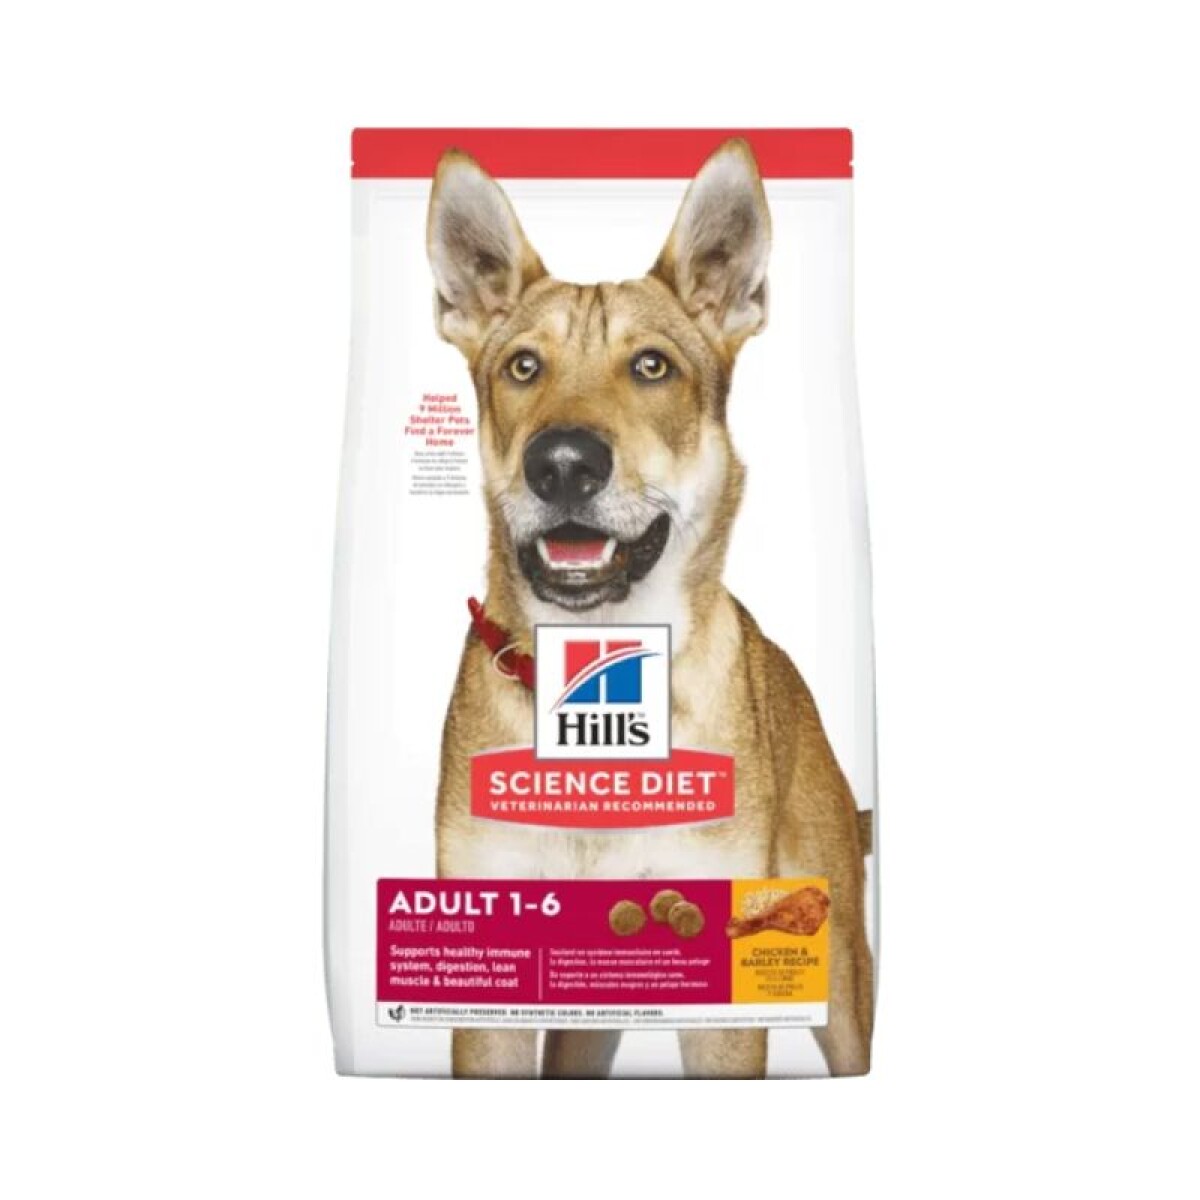 HILLS CANINE ADULT ORIGINAL 15KG - Hills Canine Adult Original 15kg 